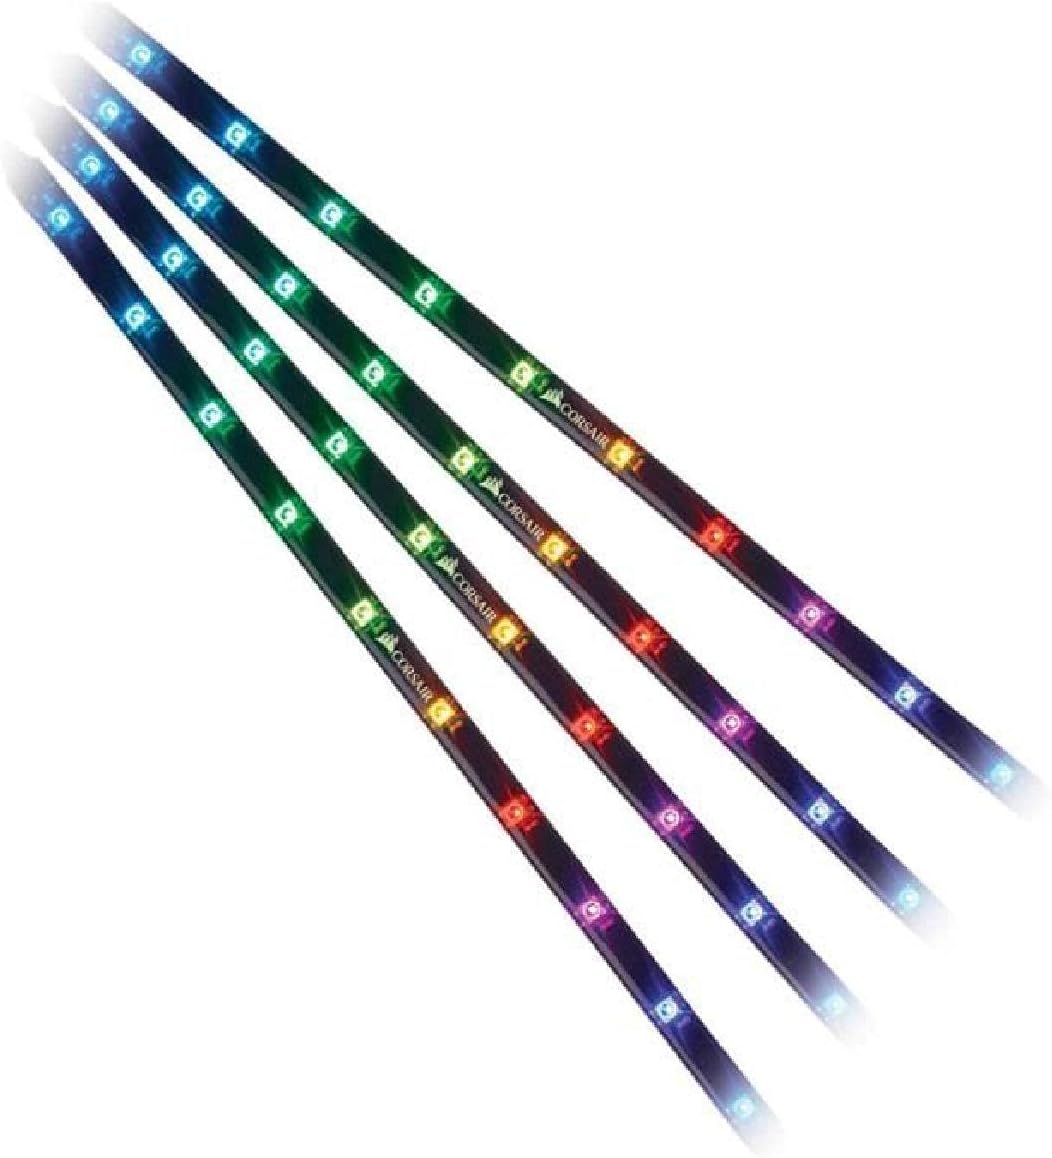 Corsair RGB LED Lighting PRO Expansion Kit